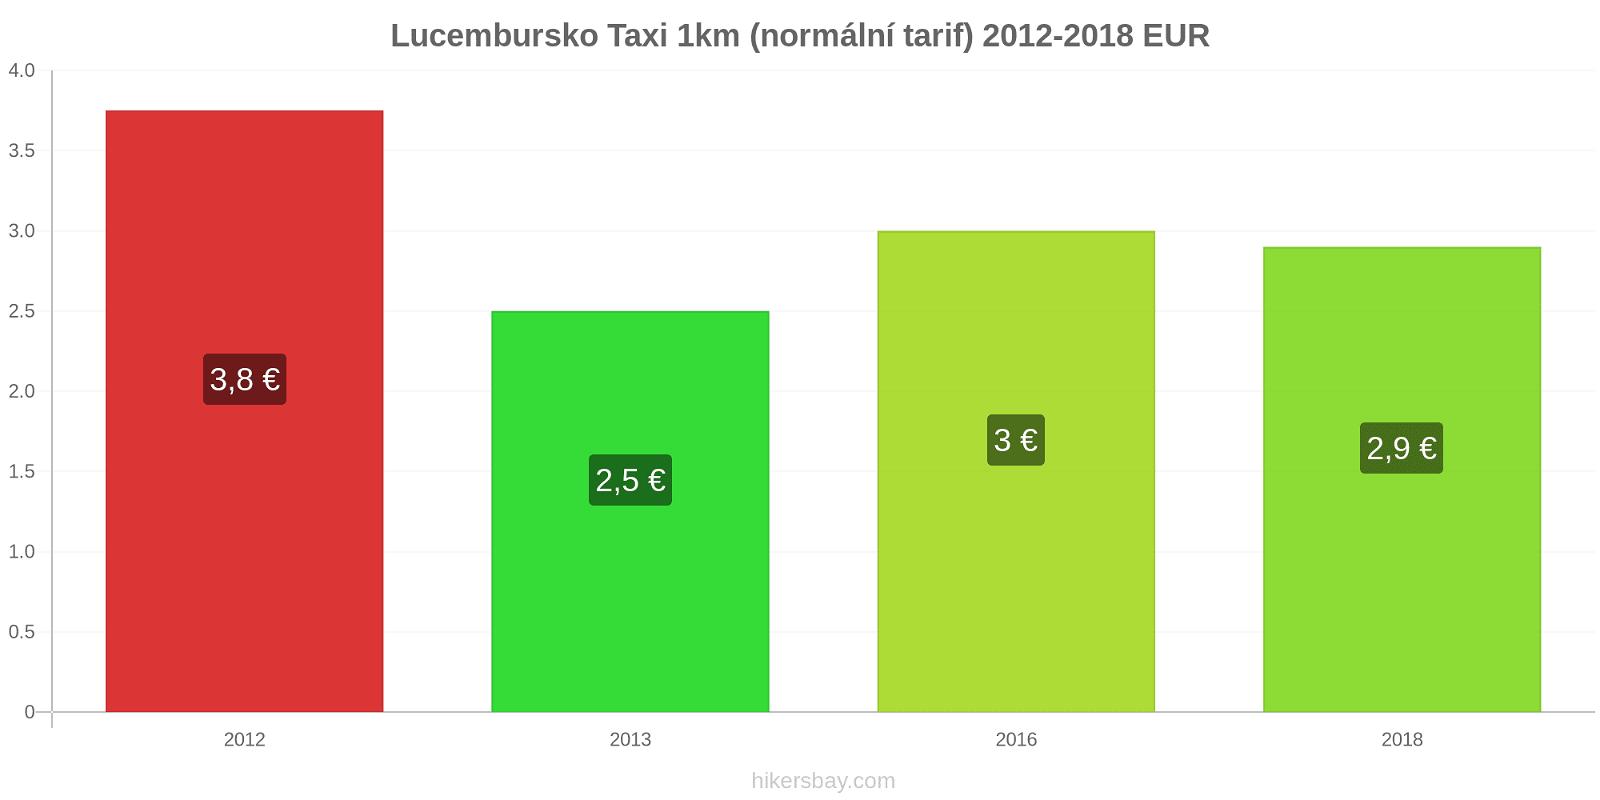 Lucembursko změny cen Taxi 1km (normální tarif) hikersbay.com